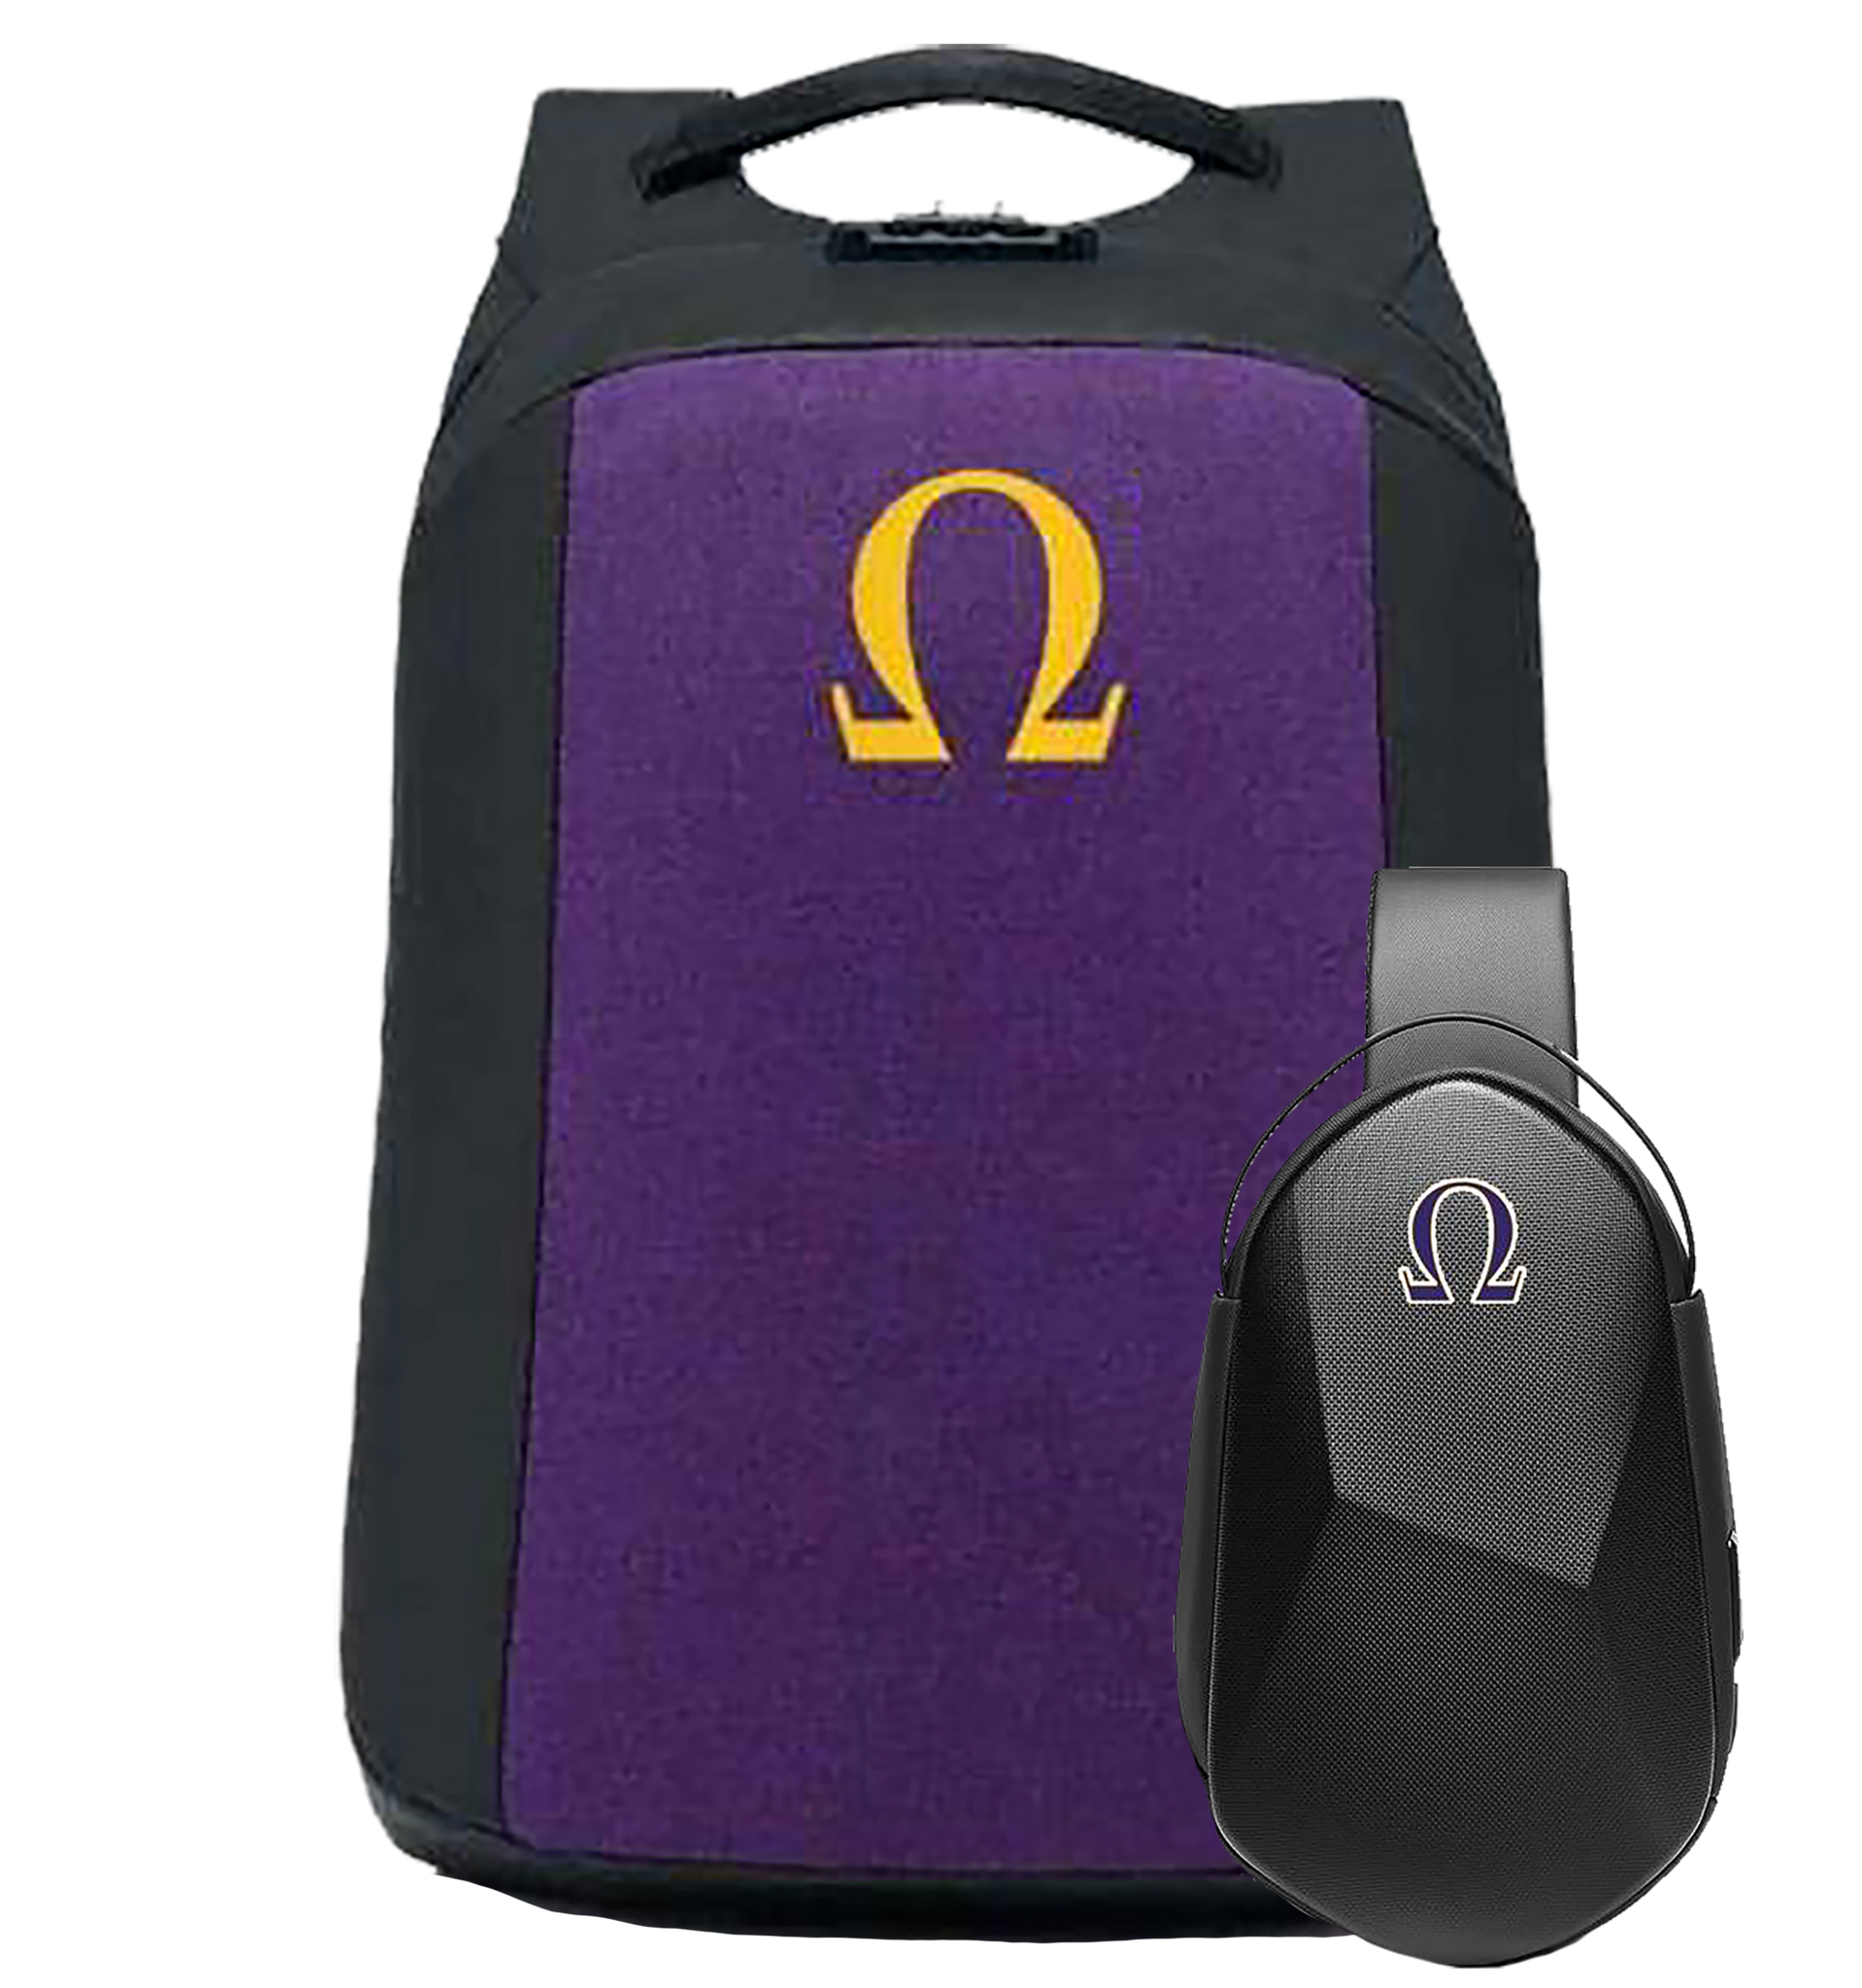 Omega Psi Phi Backpack & Sling Bundle